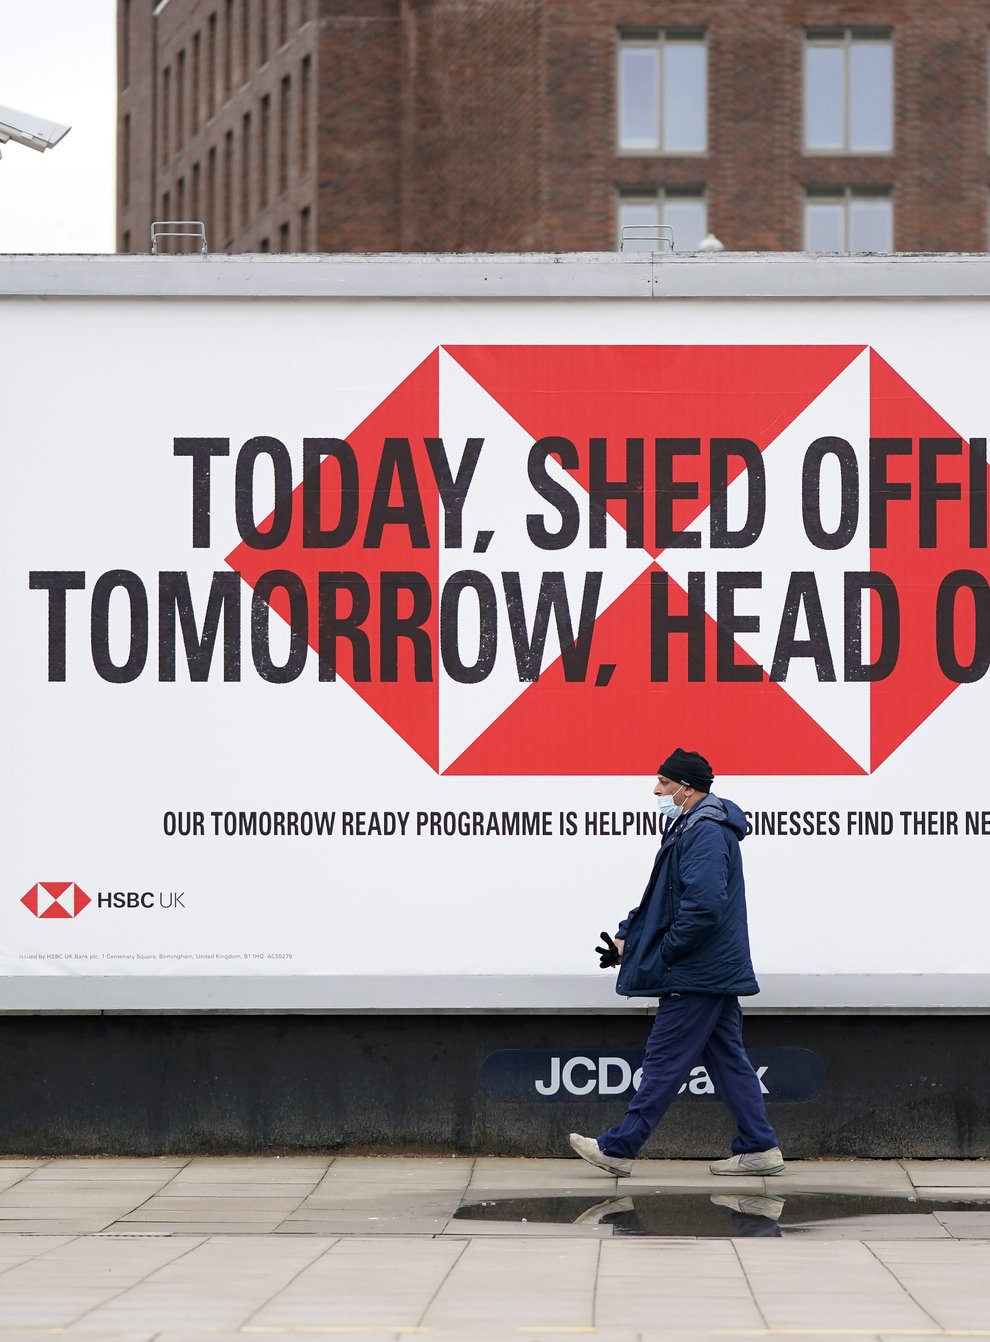 An HSBC advert